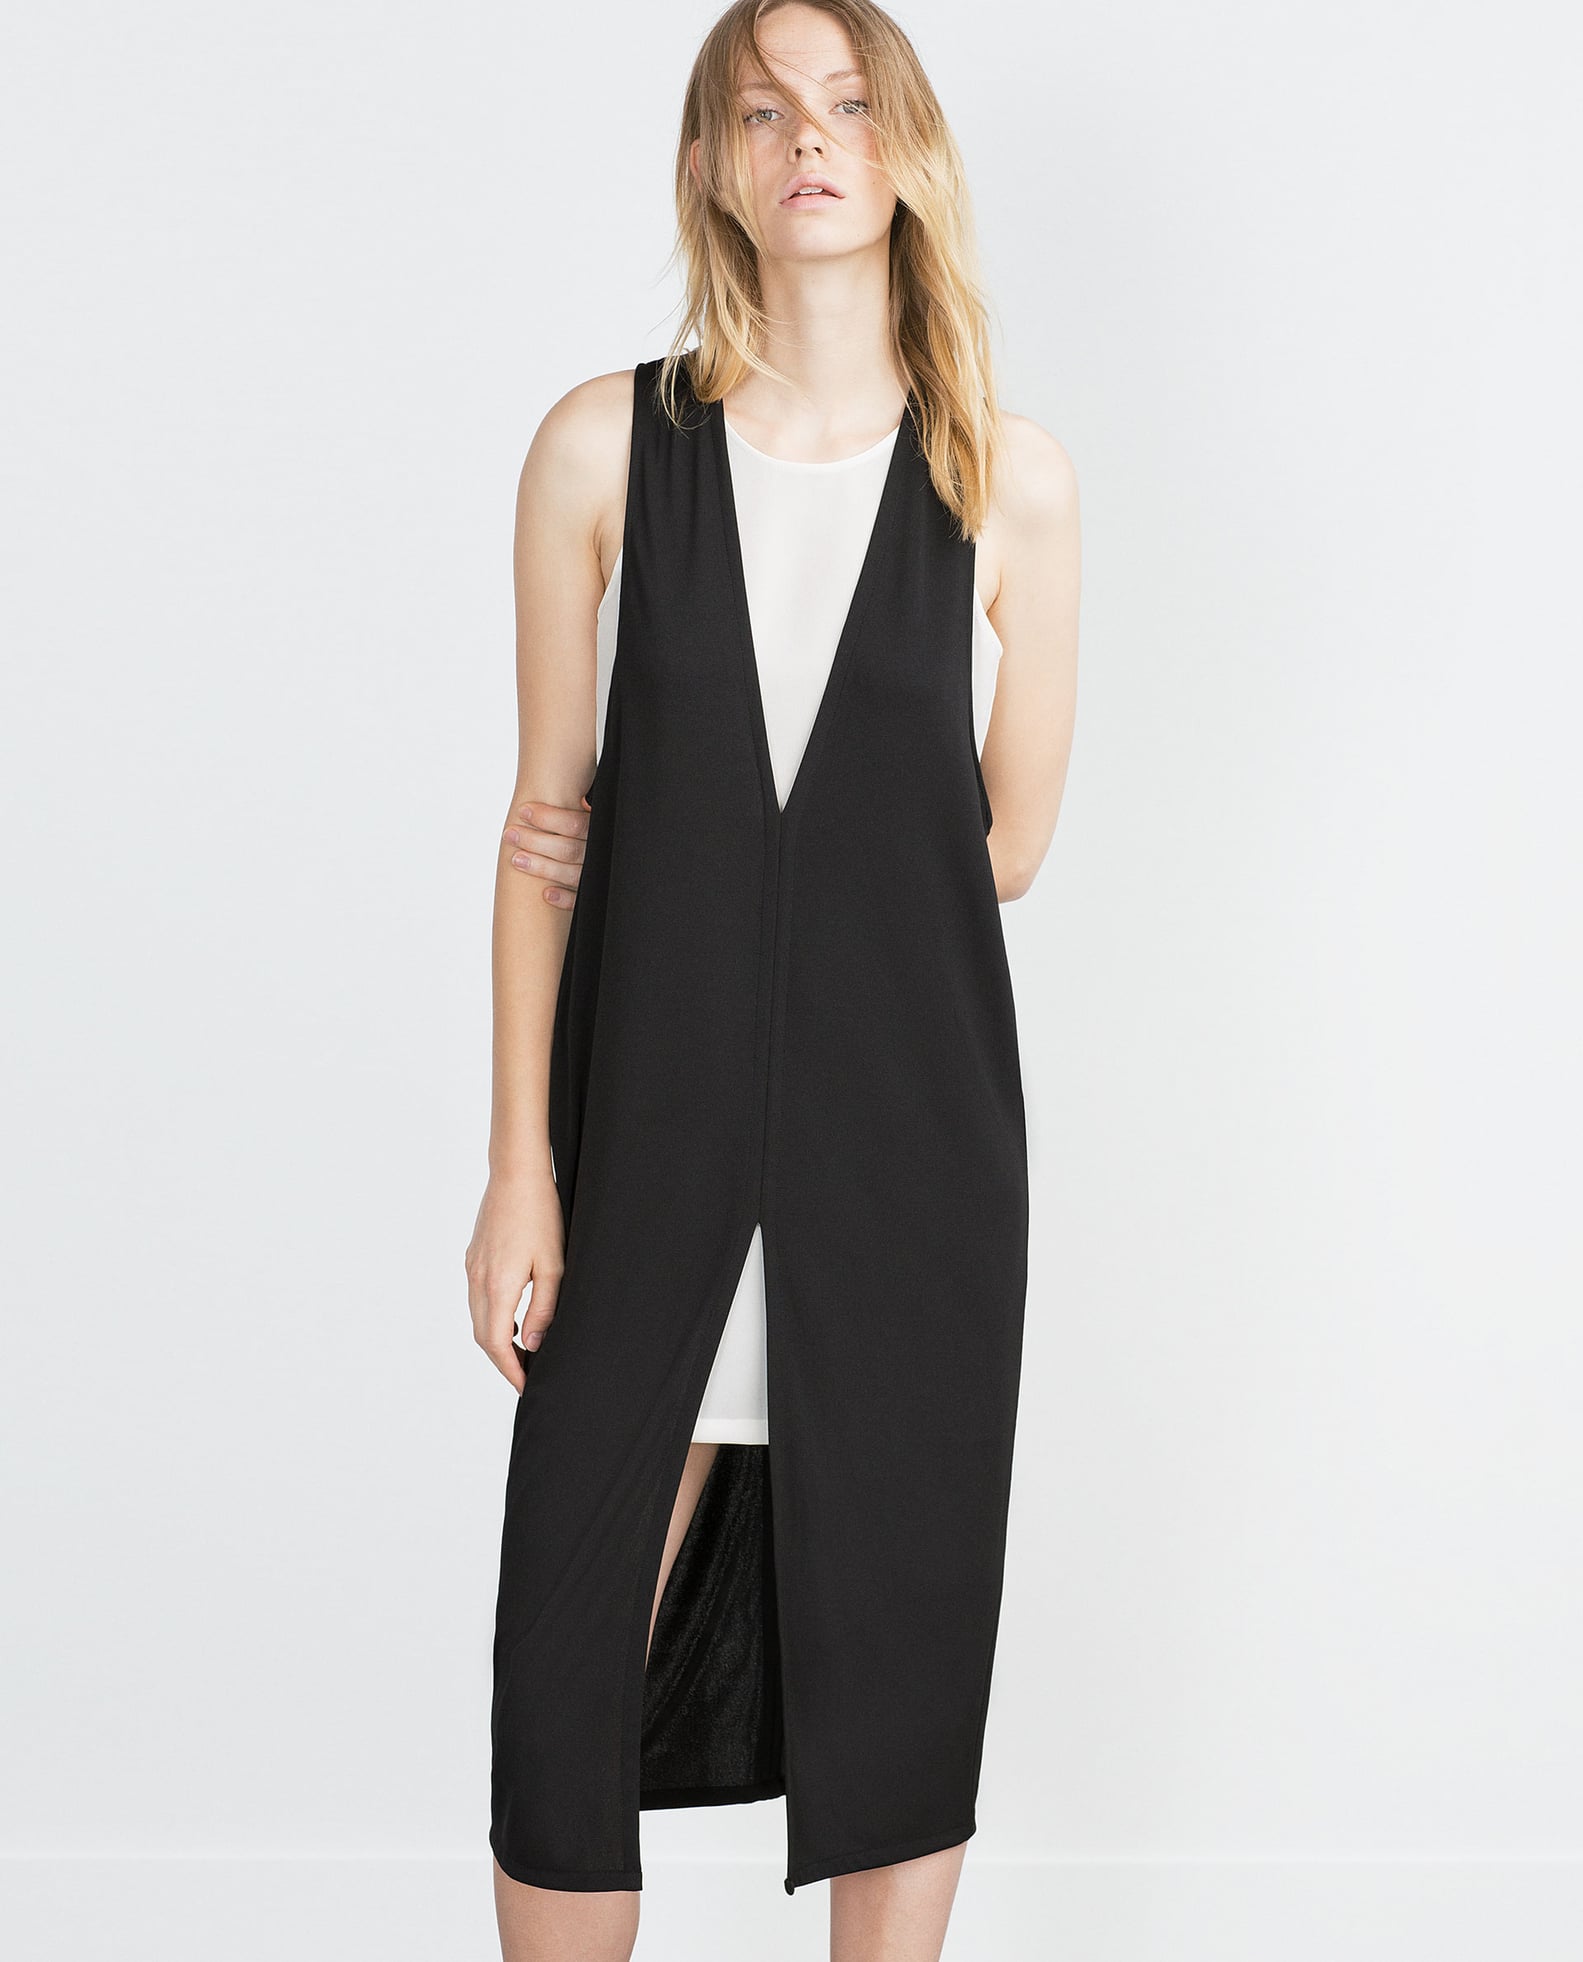 Best Pieces at Zara | July 6, 2015 | POPSUGAR Fashion